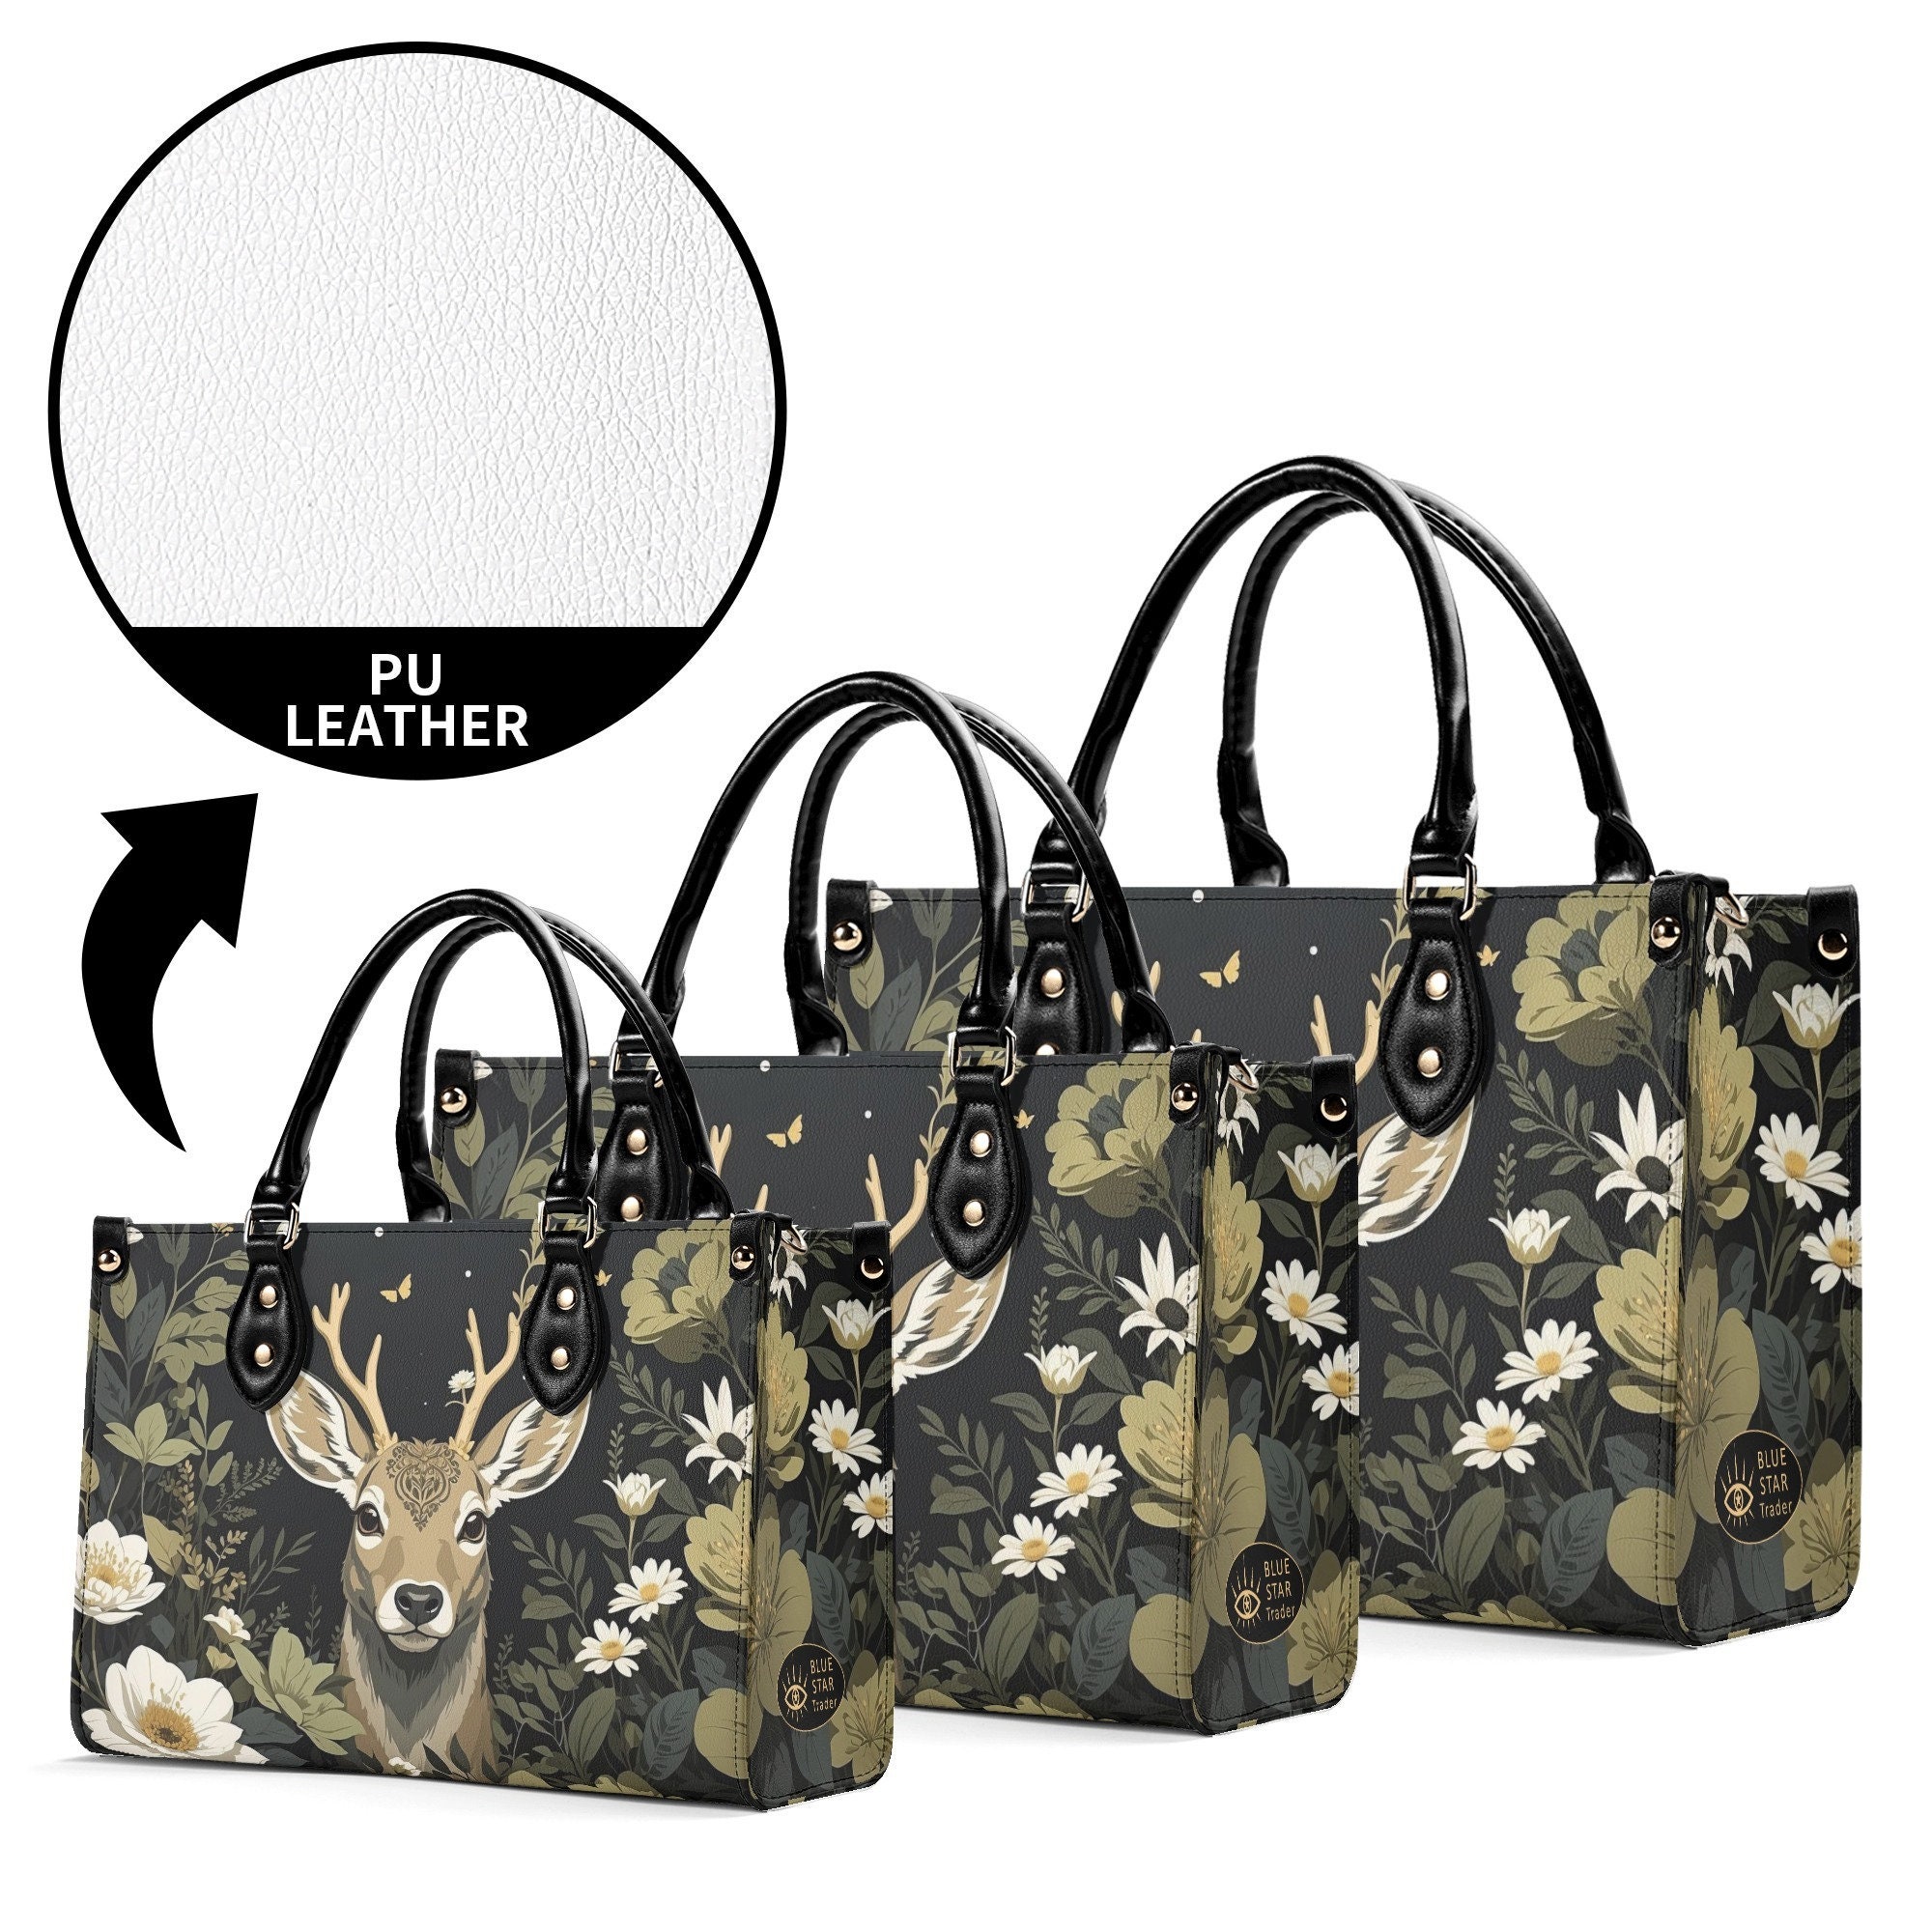 Luxury Deer Purse, Vintage Style Vegan Leather Cottagecore Handbag